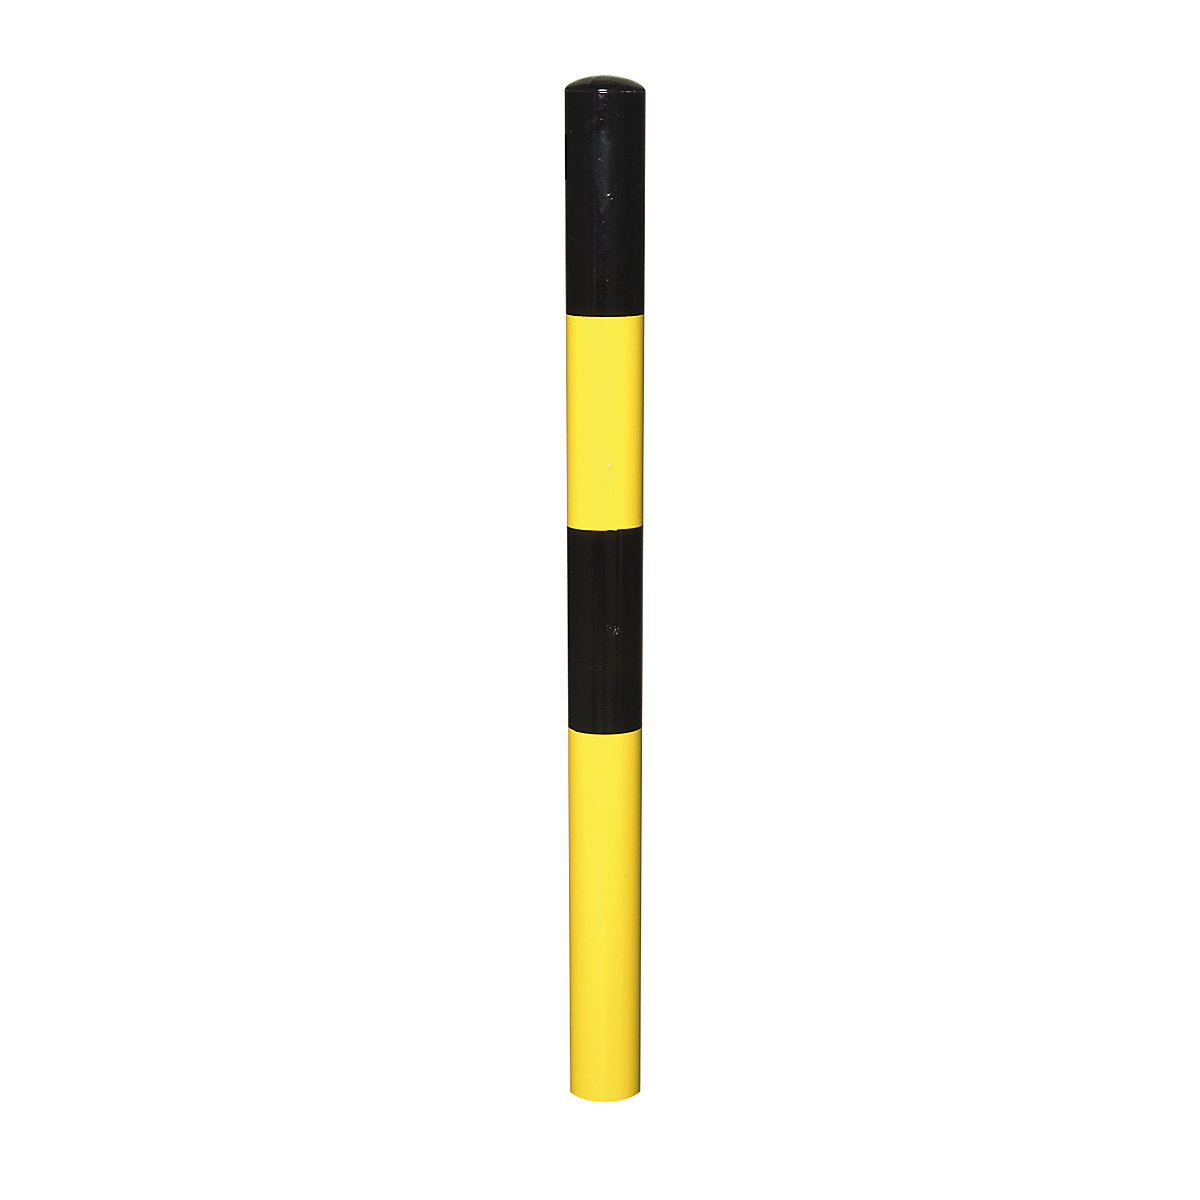 Sperrpfosten, zum Einbetonieren, Ø 76 mm, schwarz-gelb lackiert, 1 Öse